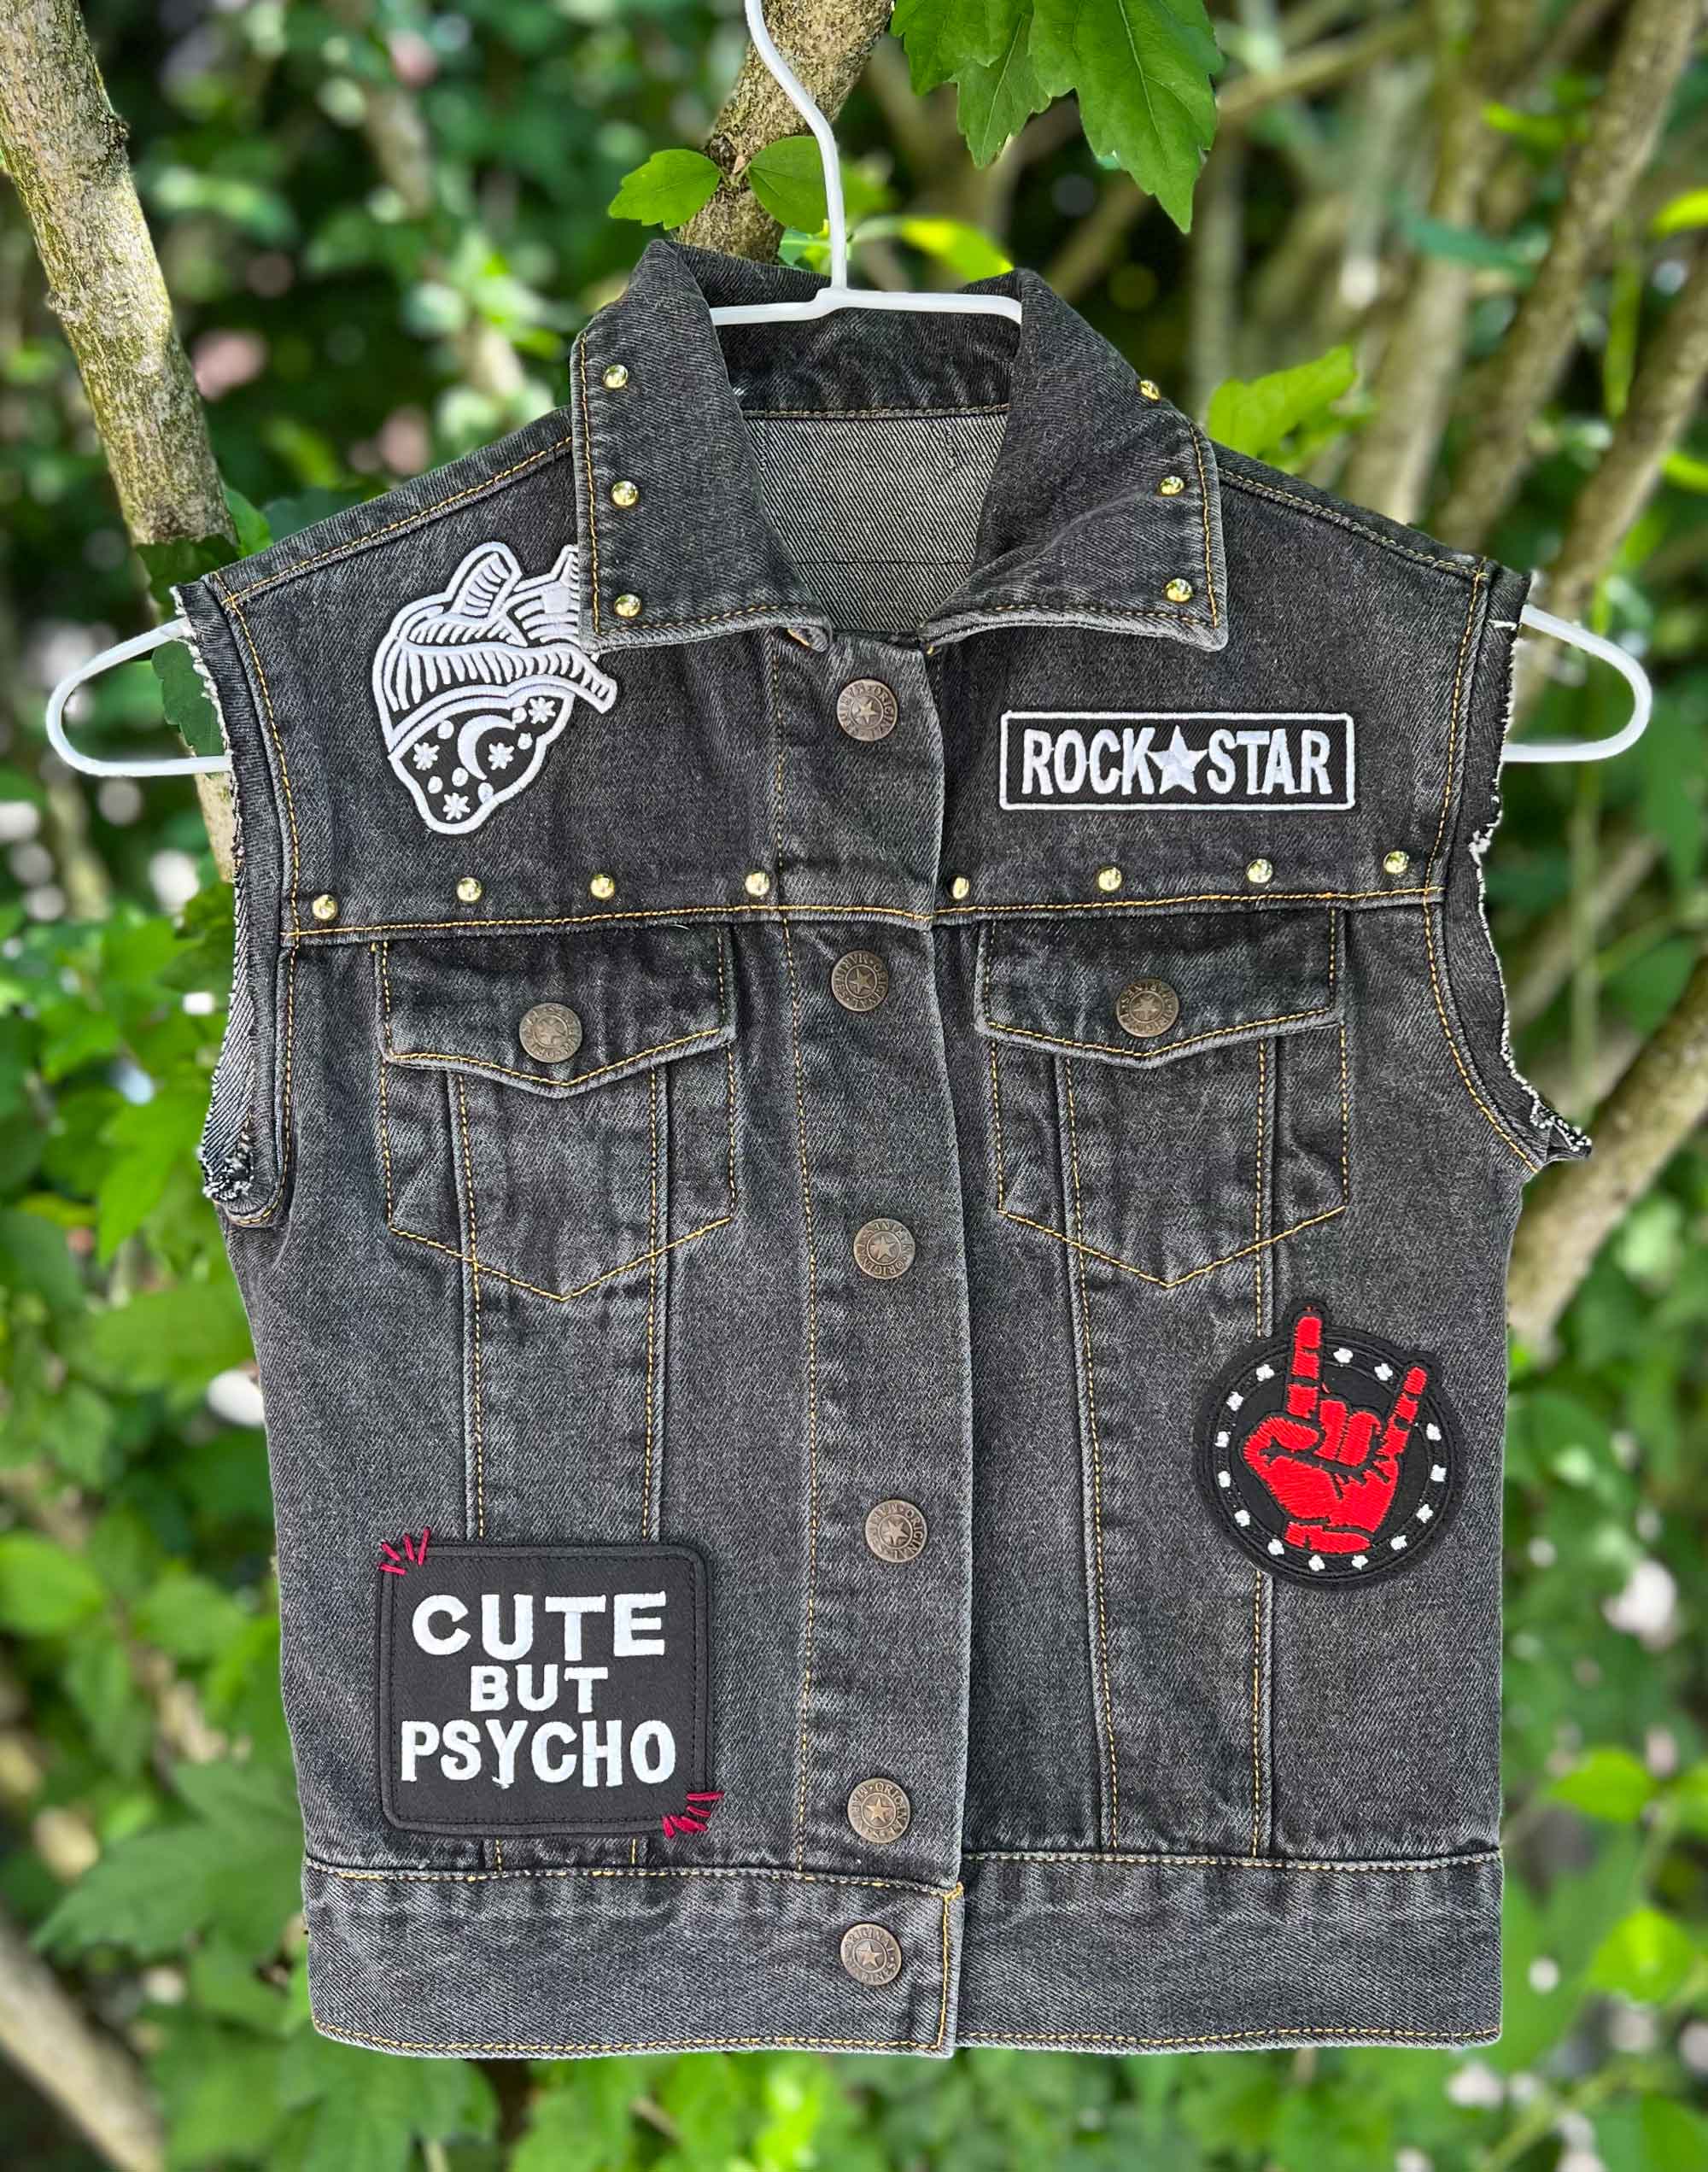 Veste en jean customisée pour enfant, veste à patchs, battle jacket, style punk rock. Pièce unique.